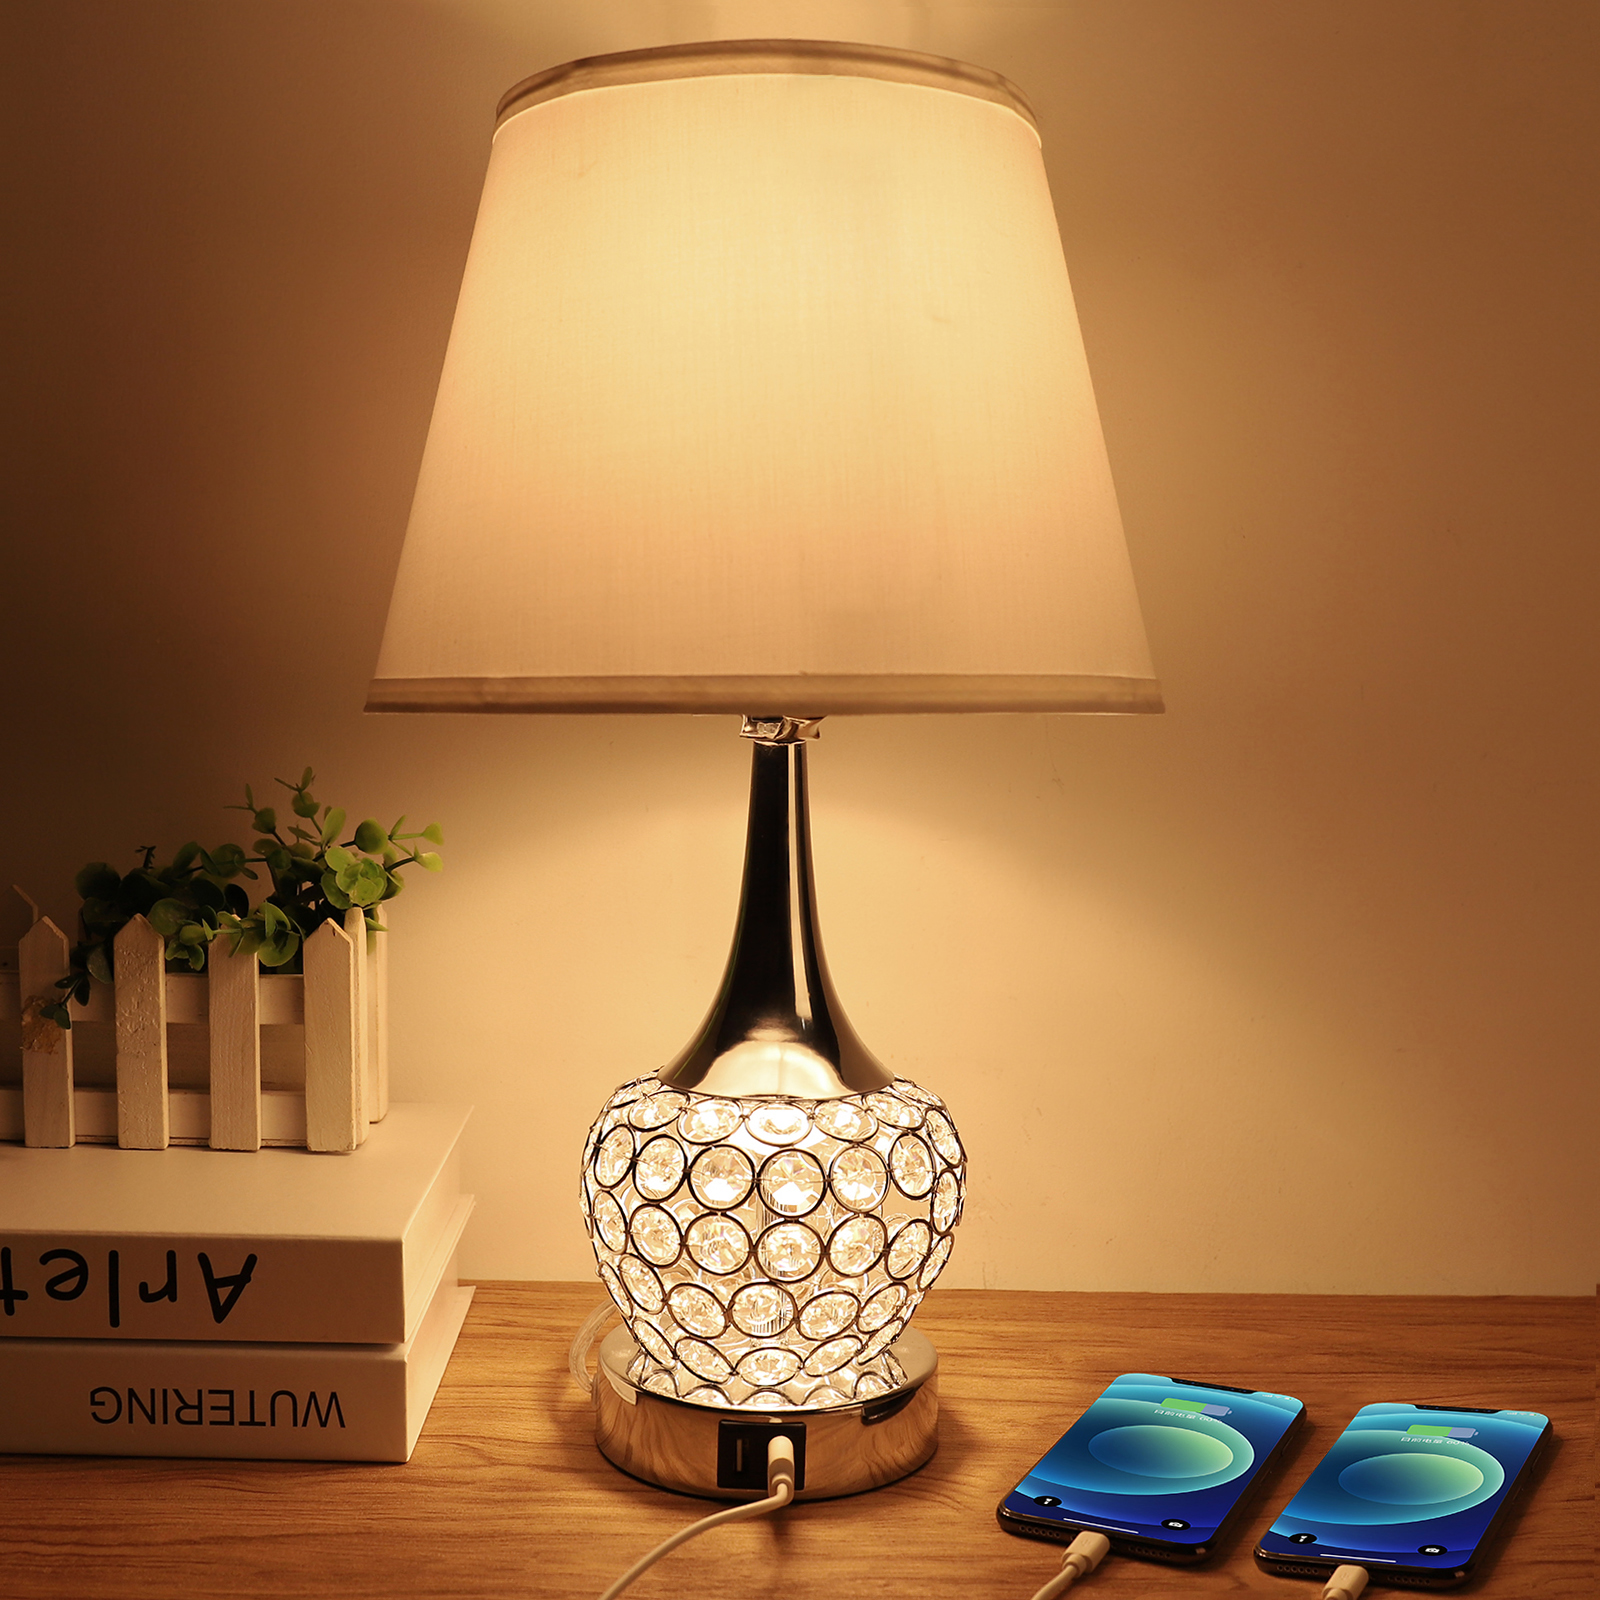 Lampe de table en cristal, Lampe de chevet de chevet avec deux ports USB, Lampe de table moderne 4 Way Switch décoratif pour chambre à coucher, Salon, Vestiaire, Ampoule LED A19 6W incluse